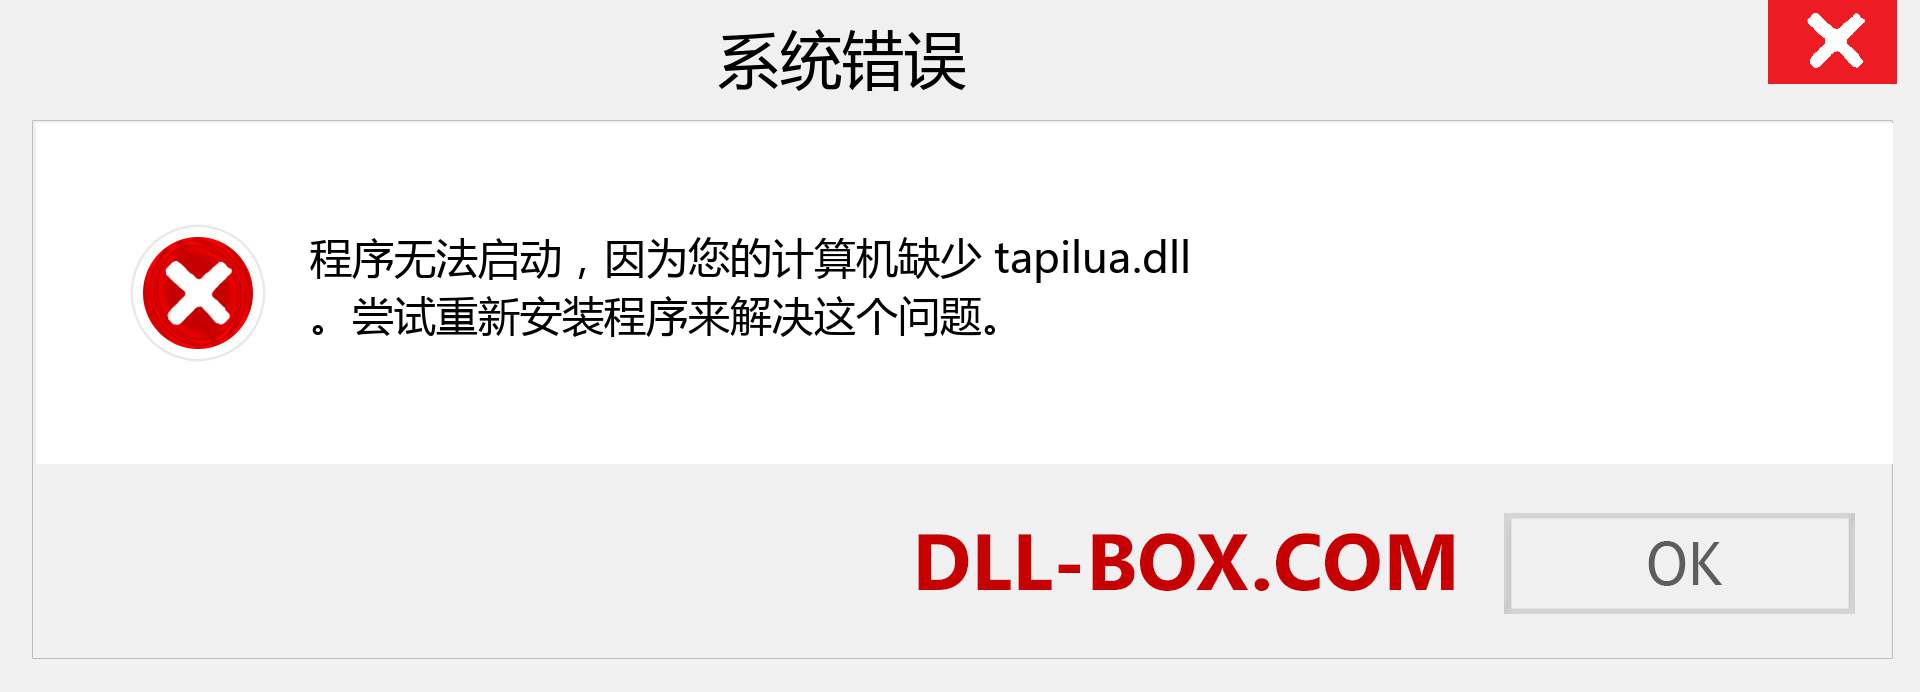 tapilua.dll 文件丢失？。 适用于 Windows 7、8、10 的下载 - 修复 Windows、照片、图像上的 tapilua dll 丢失错误